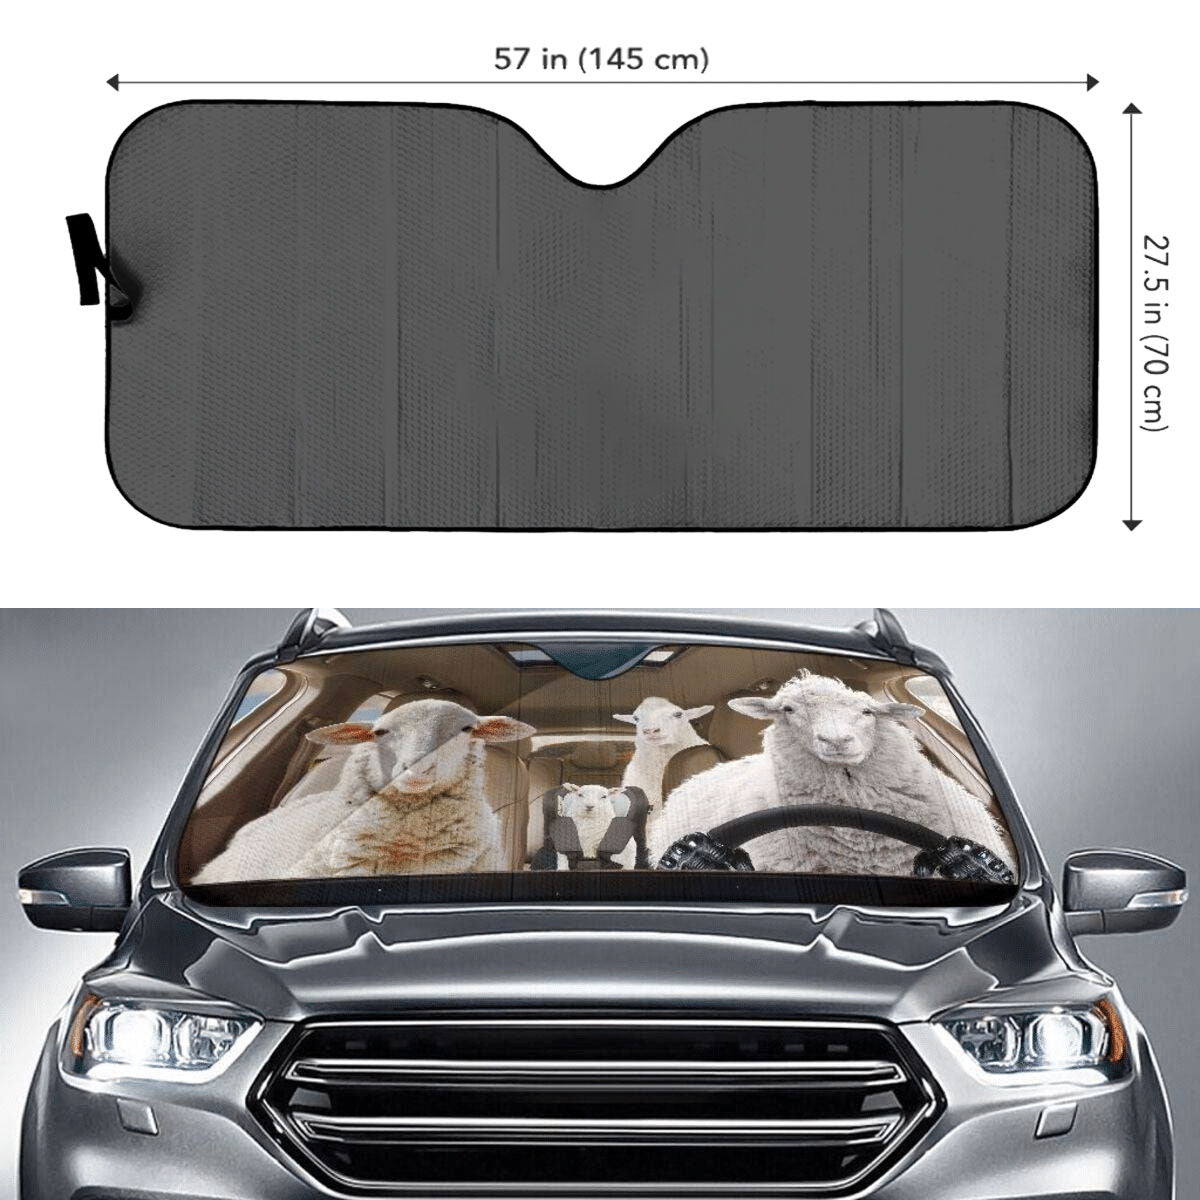 Custom Windshield Sun Shade for Car Sheep Family Driver Car Sun Shade - Car Accessory